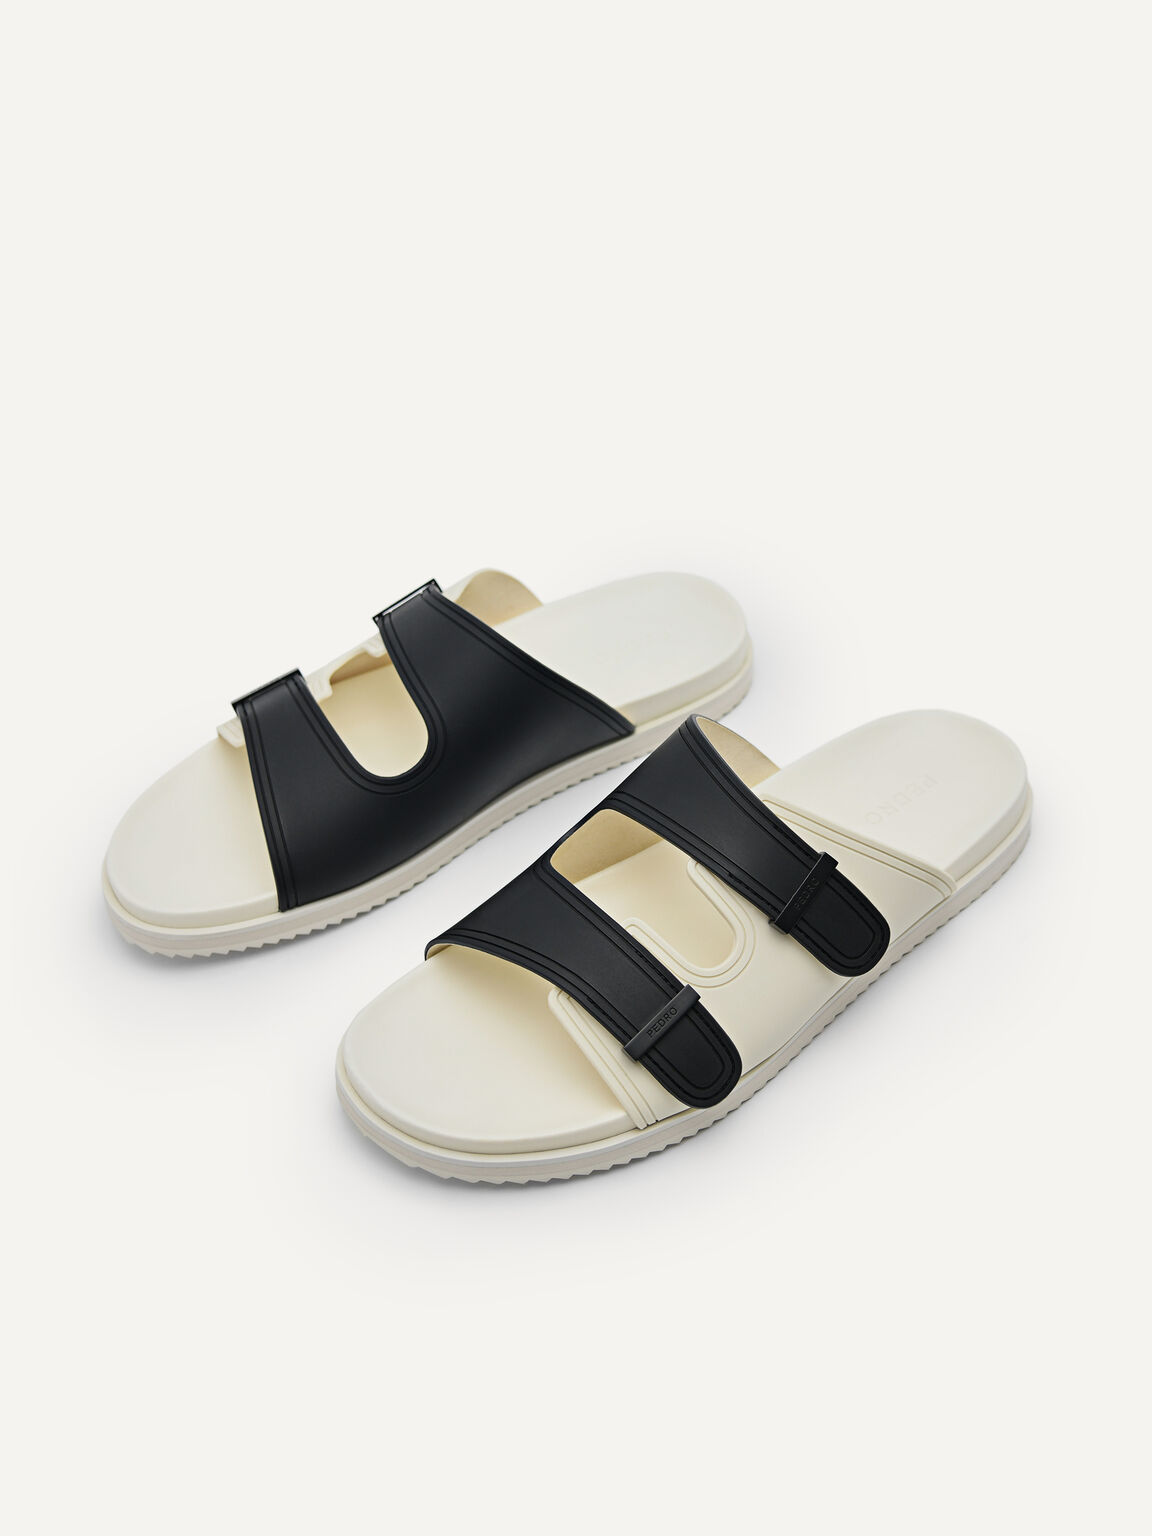 Rubber Double-strap Walking Sandals, Black, hi-res